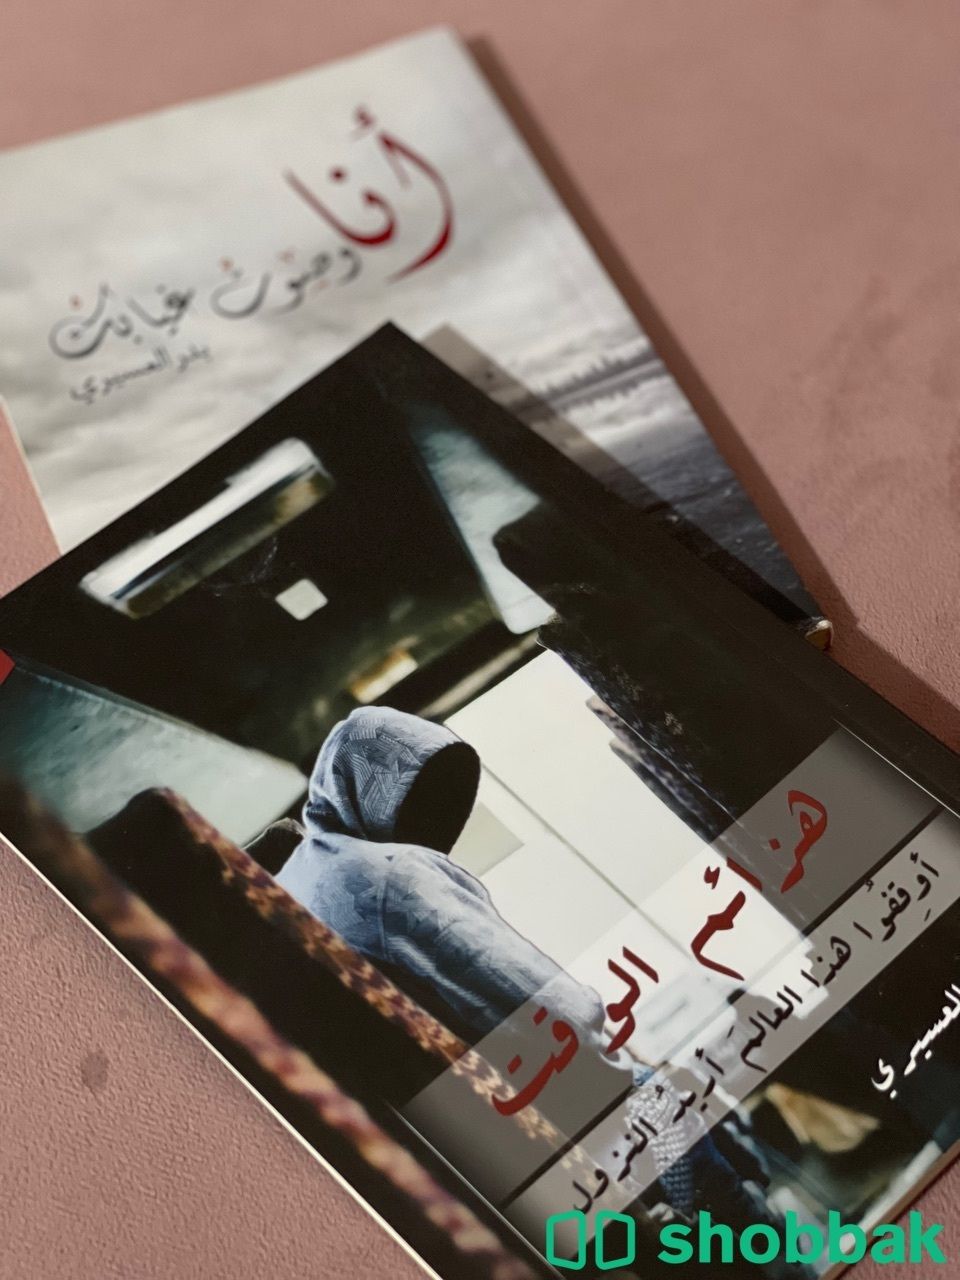 مجموعة كتب للكاتب بدر العسيري  Shobbak Saudi Arabia